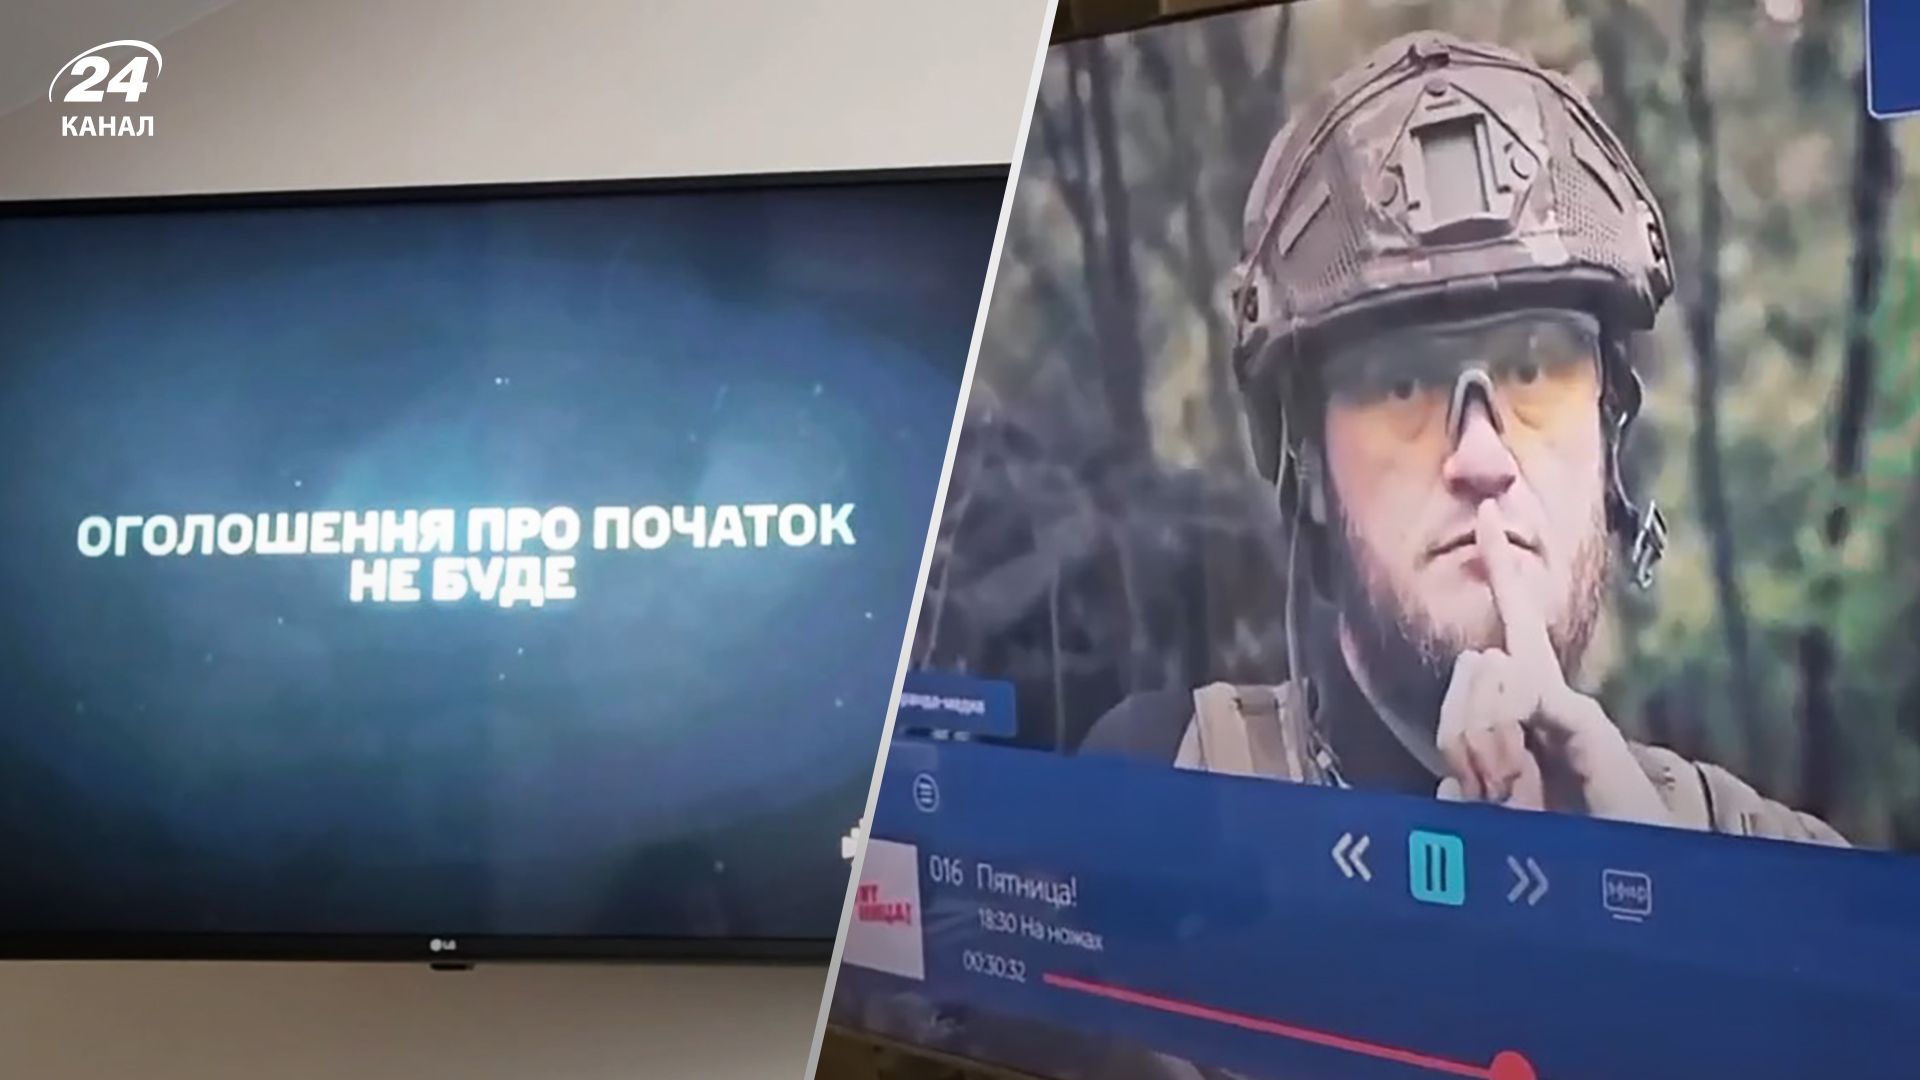 В Крыму взломали телеканалы и показали обращение ВСУ о контрнаступлении - детали